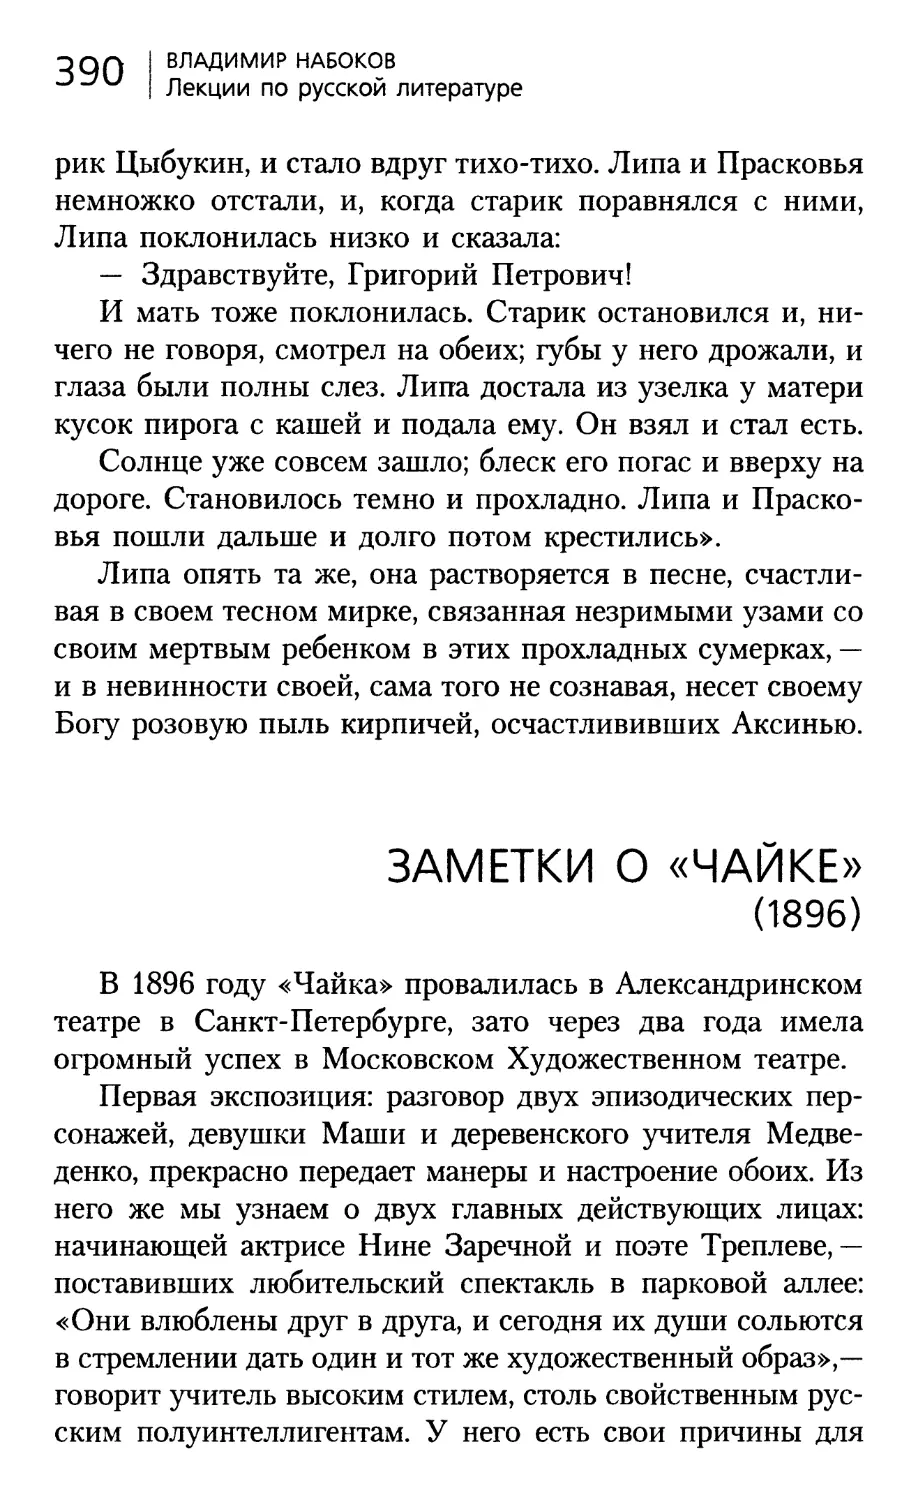 ЗАМЕТКИ О «ЧАЙКЕ» (1896). Перевод А.Курт